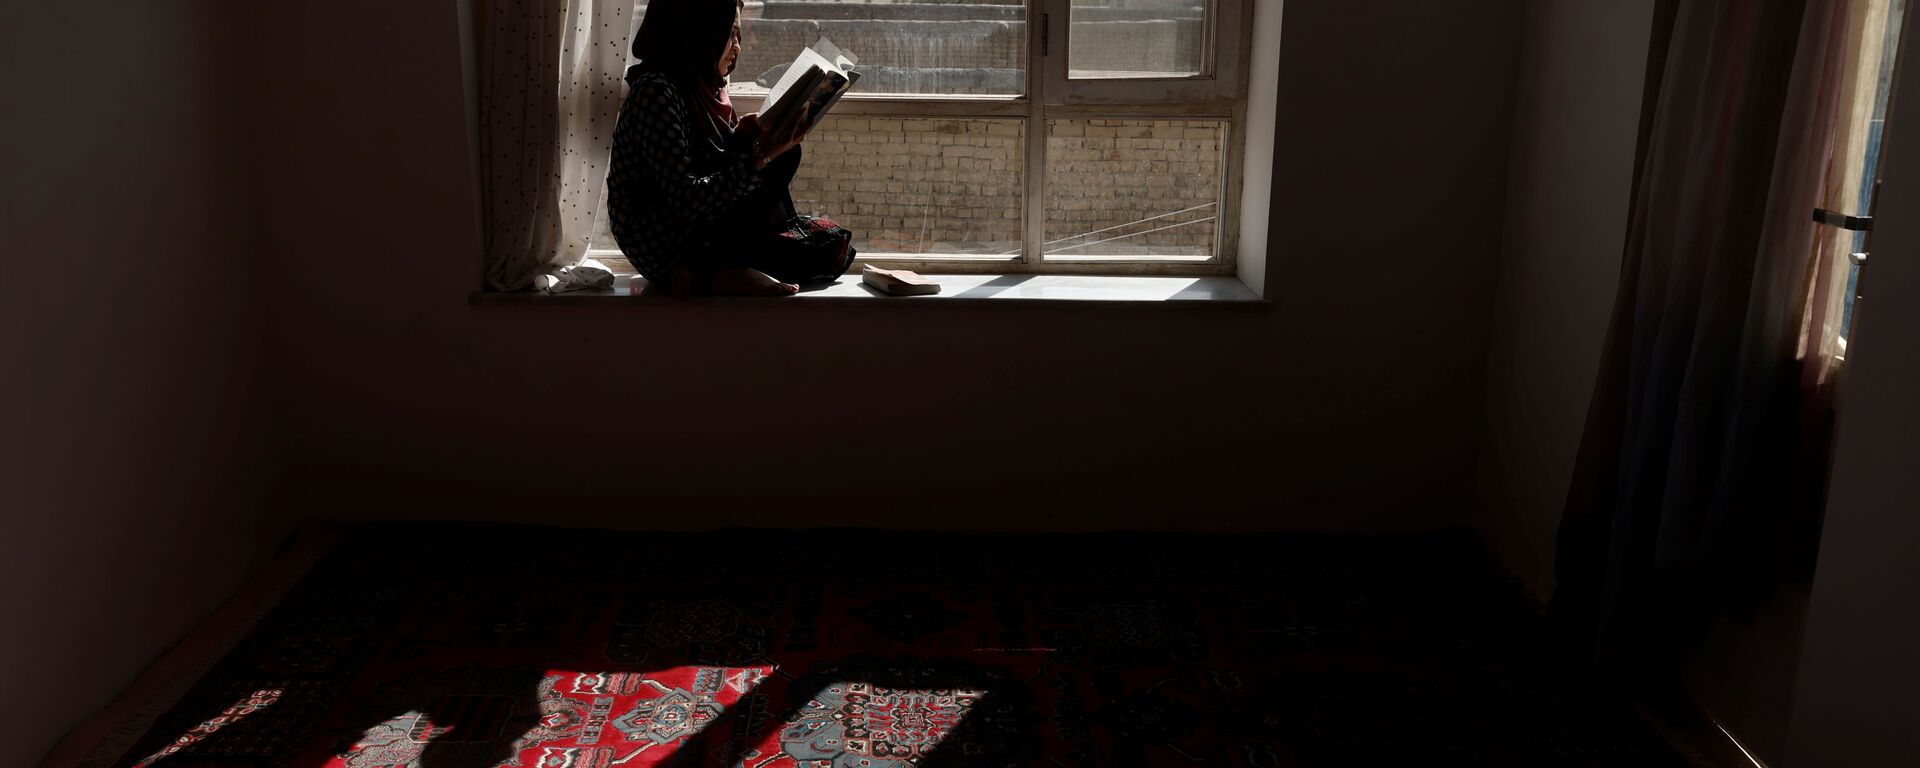 20-летняя студентка Хава читает книгу на подоконнике своего дома в Кабуле, Афганистан - Sputnik Mundo, 1920, 06.11.2021